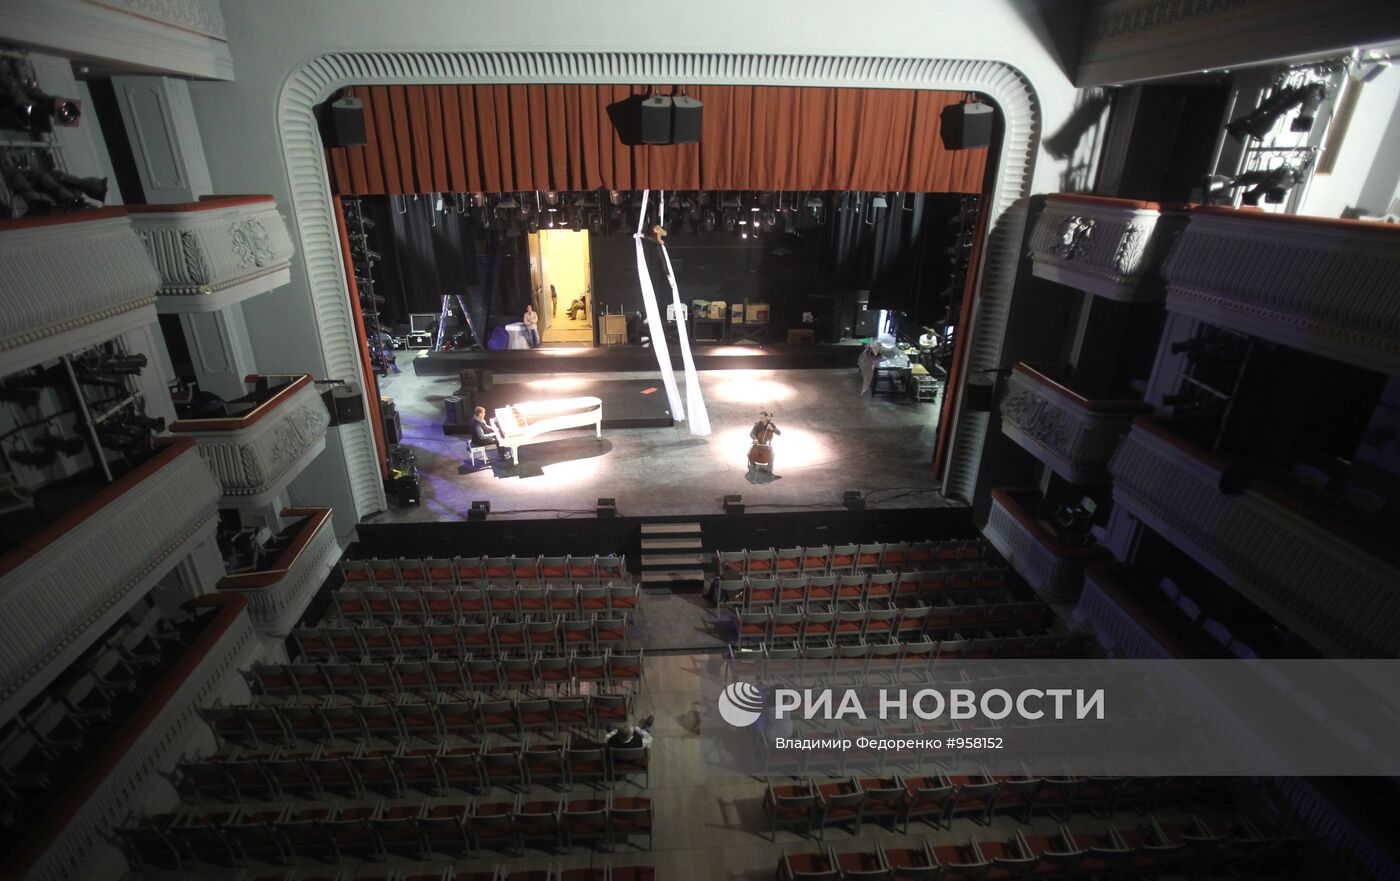 Завершение реконструкции Государственного Театра Наций